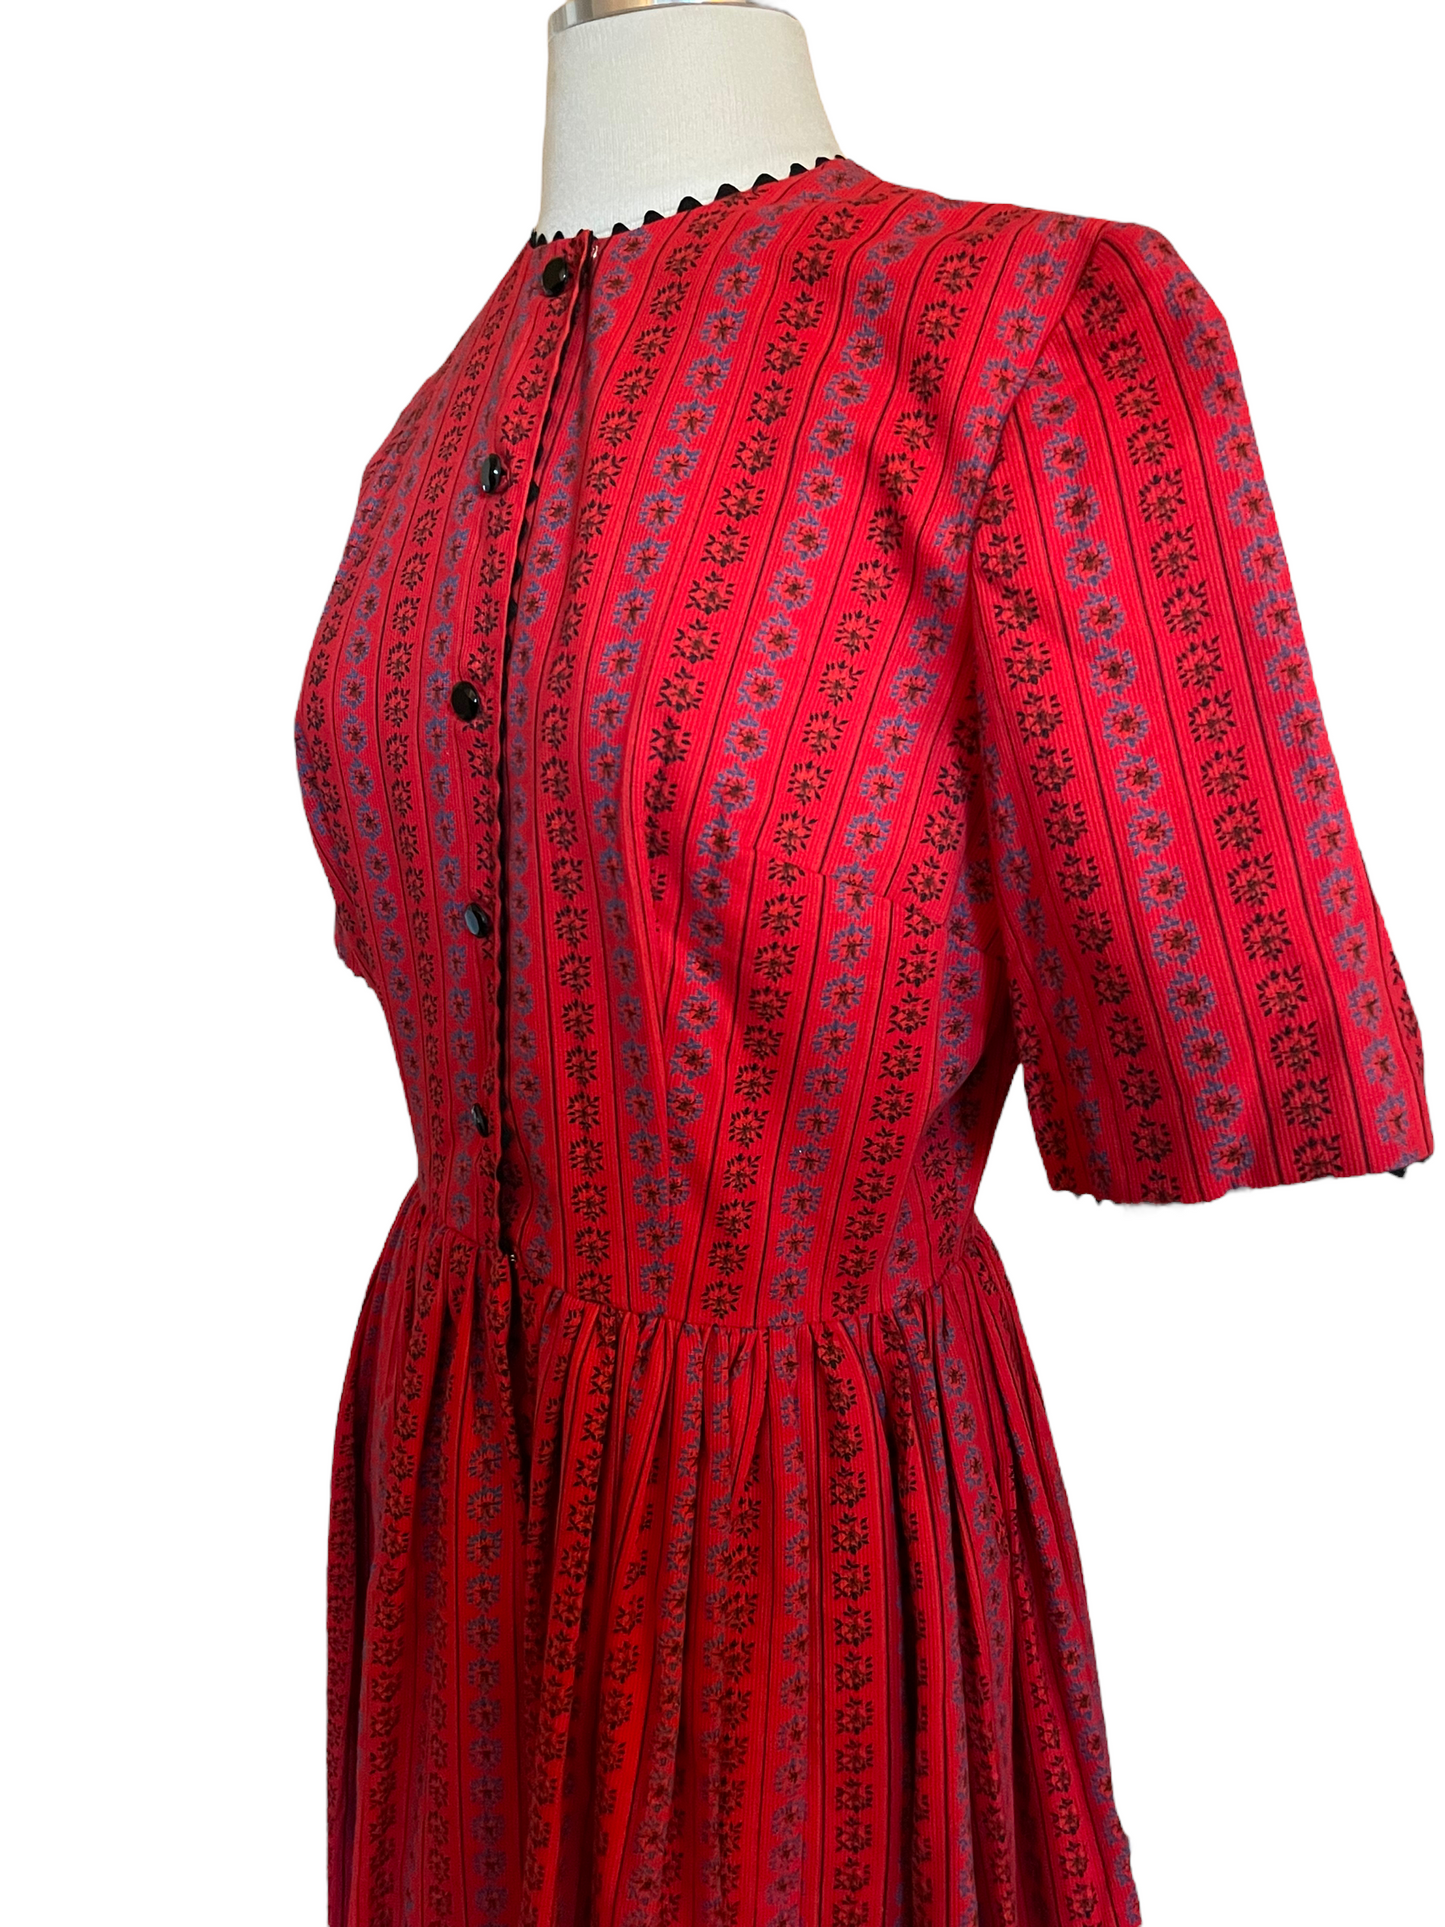 Vintage 1950s Red Corduroy Dress SZ S-M |  Barn Owl Vintage | Seattle Vintage Dresses Left upper side view.